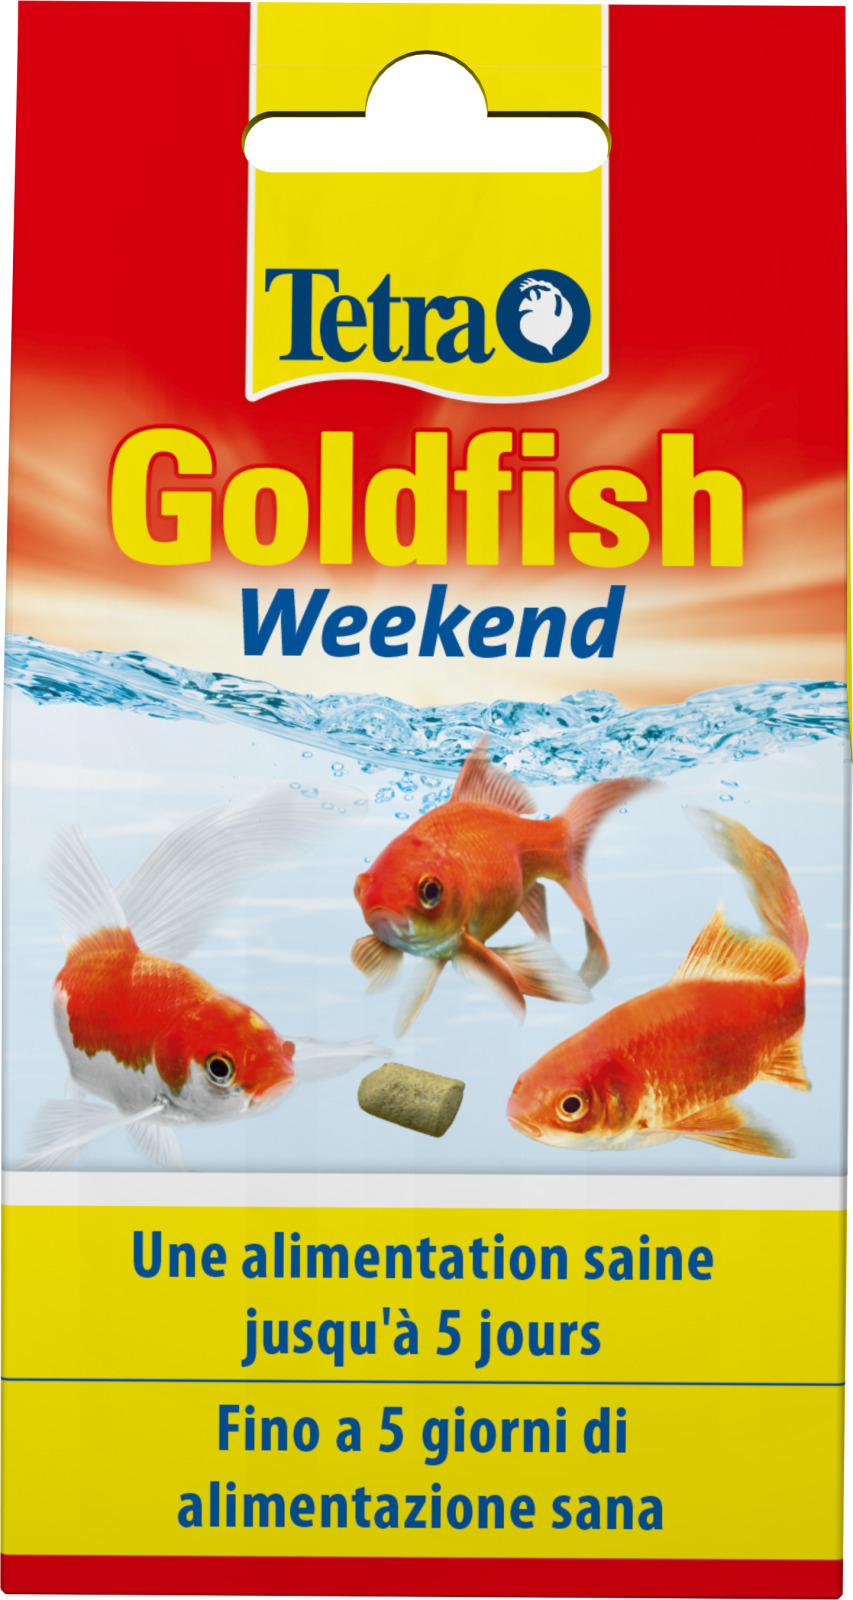 Tetra Goldfish Weekend Ferienfutter für Goldfische